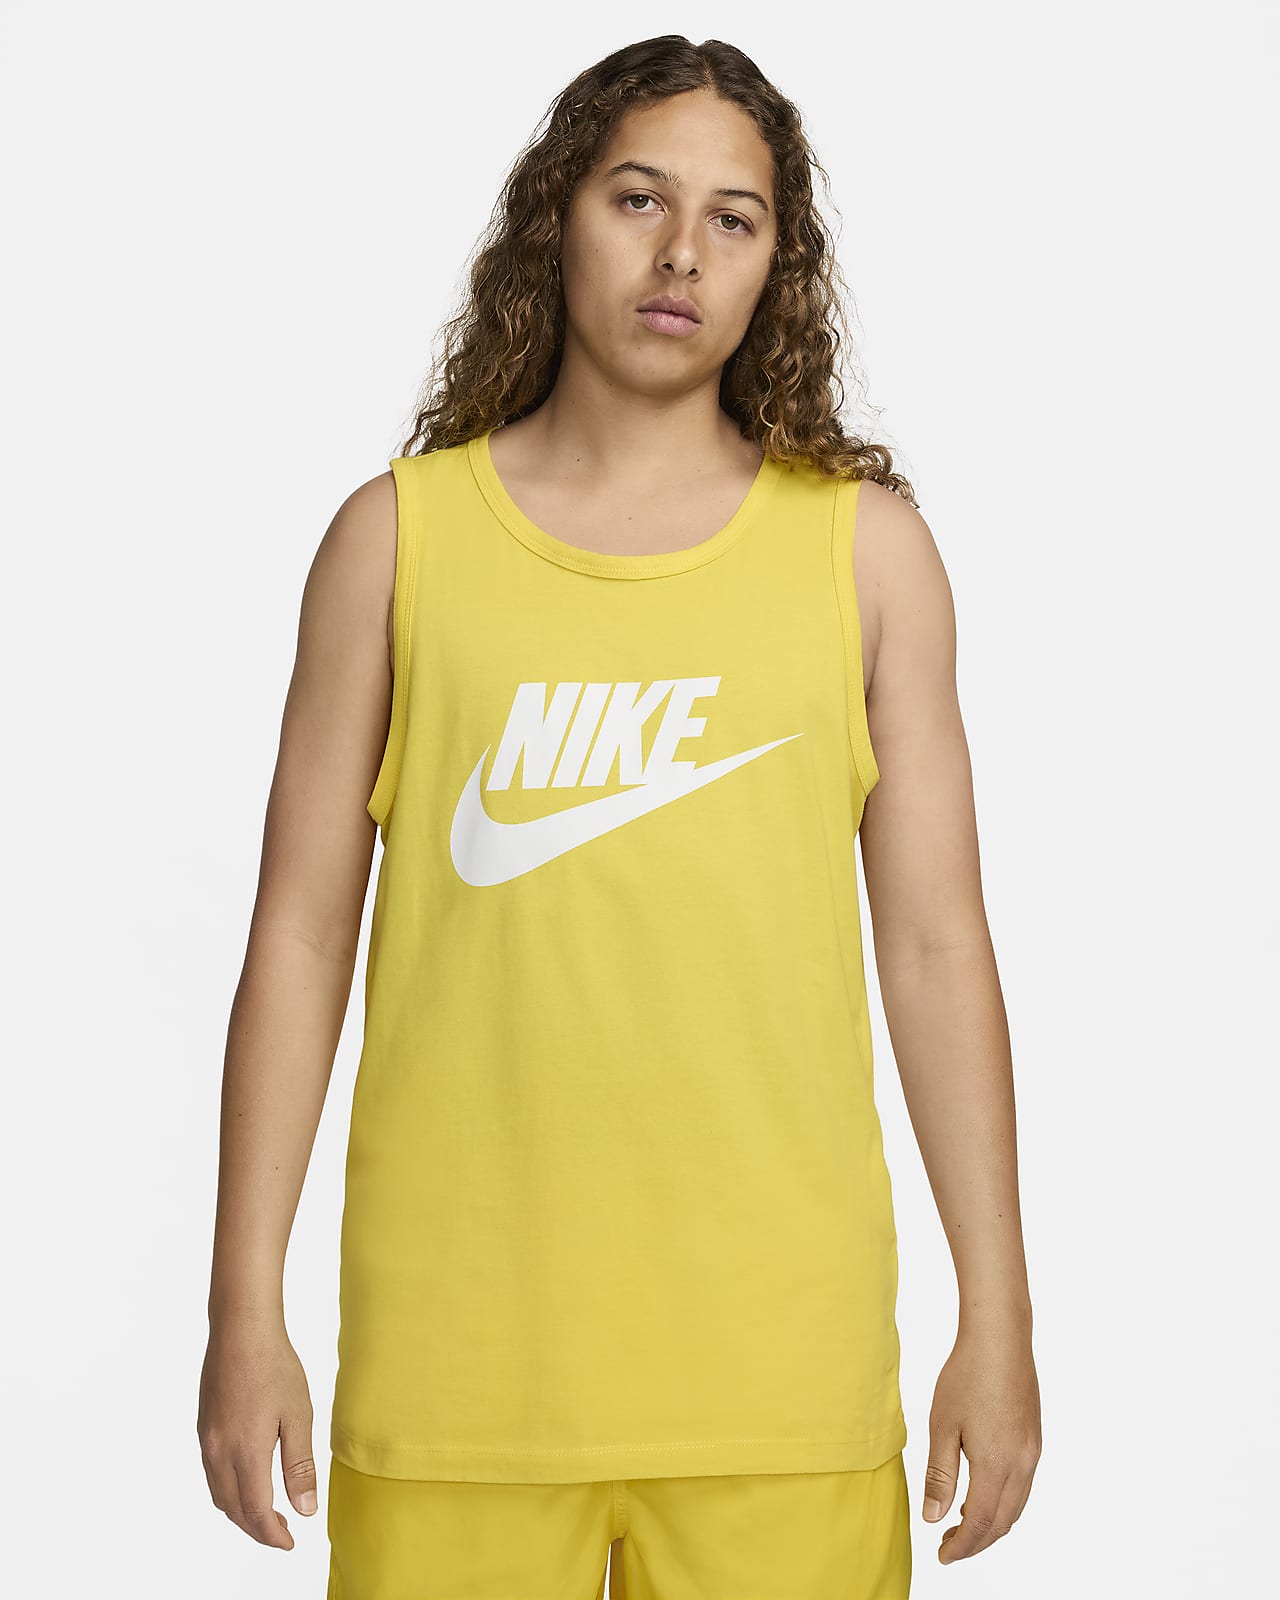 Nike Sportswear Men's Tank